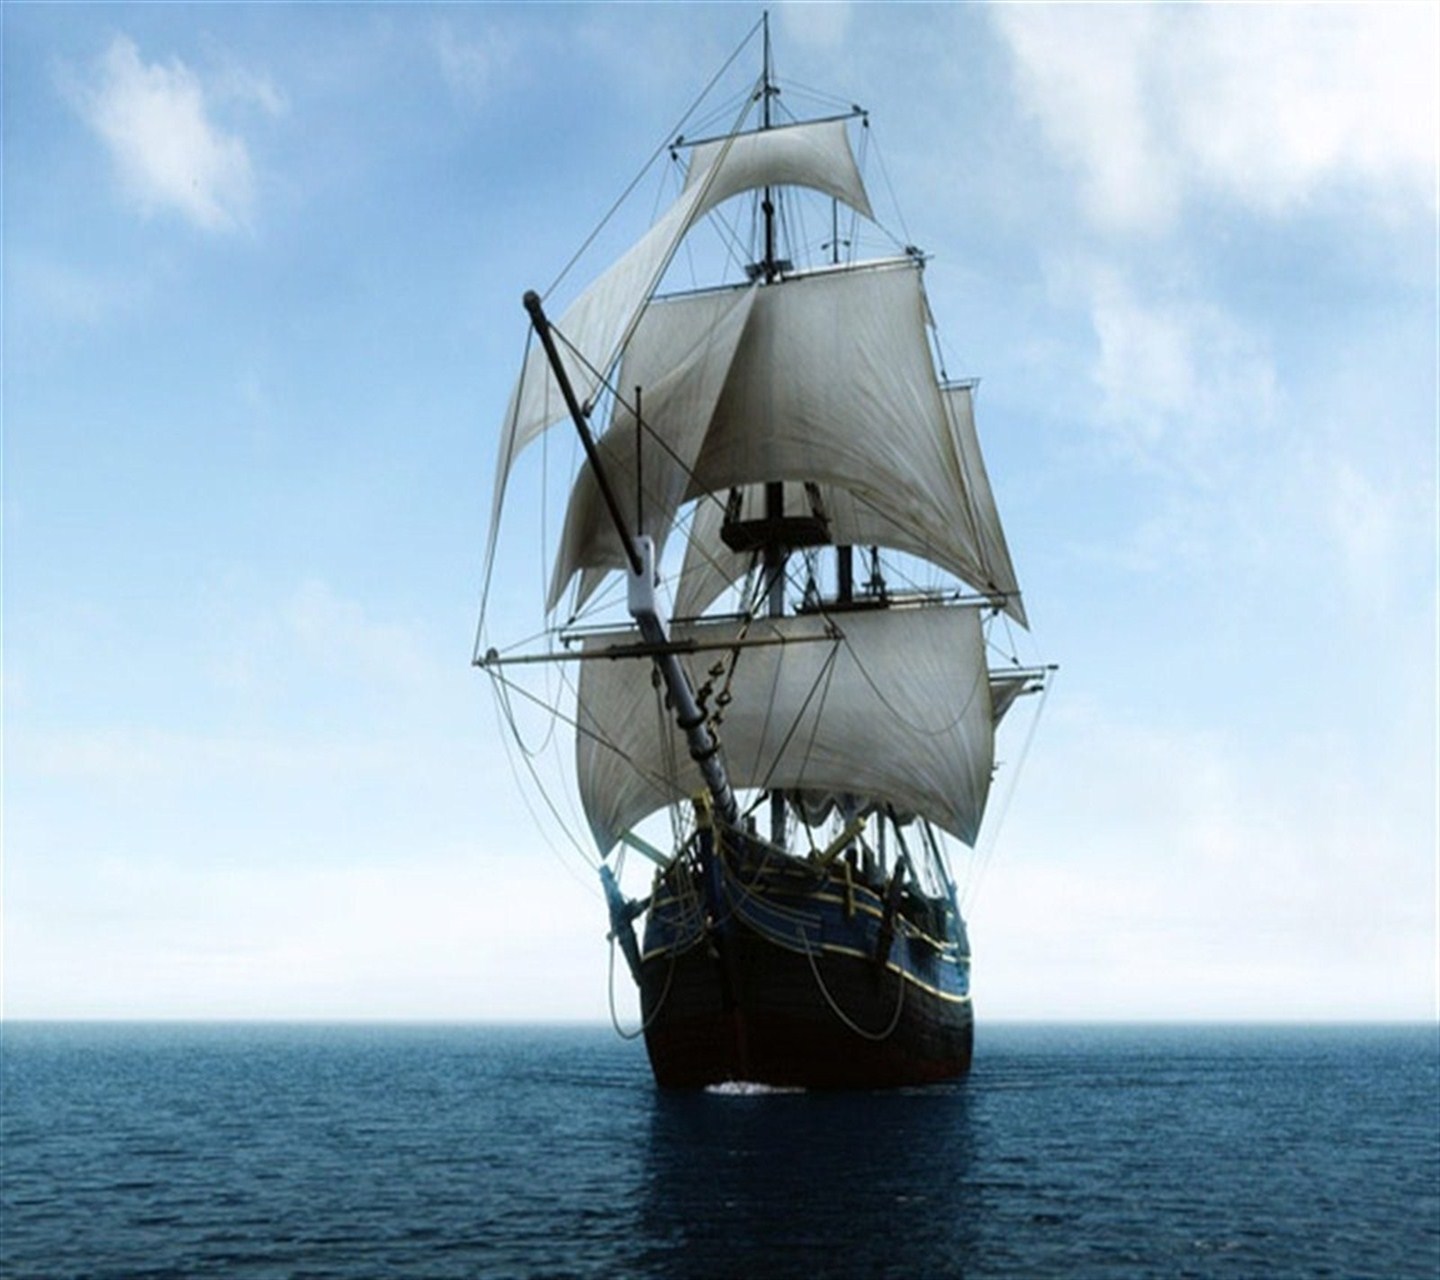 carta da parati vecchia nave,veicolo,barca,veliero,barquentine,sloop of war